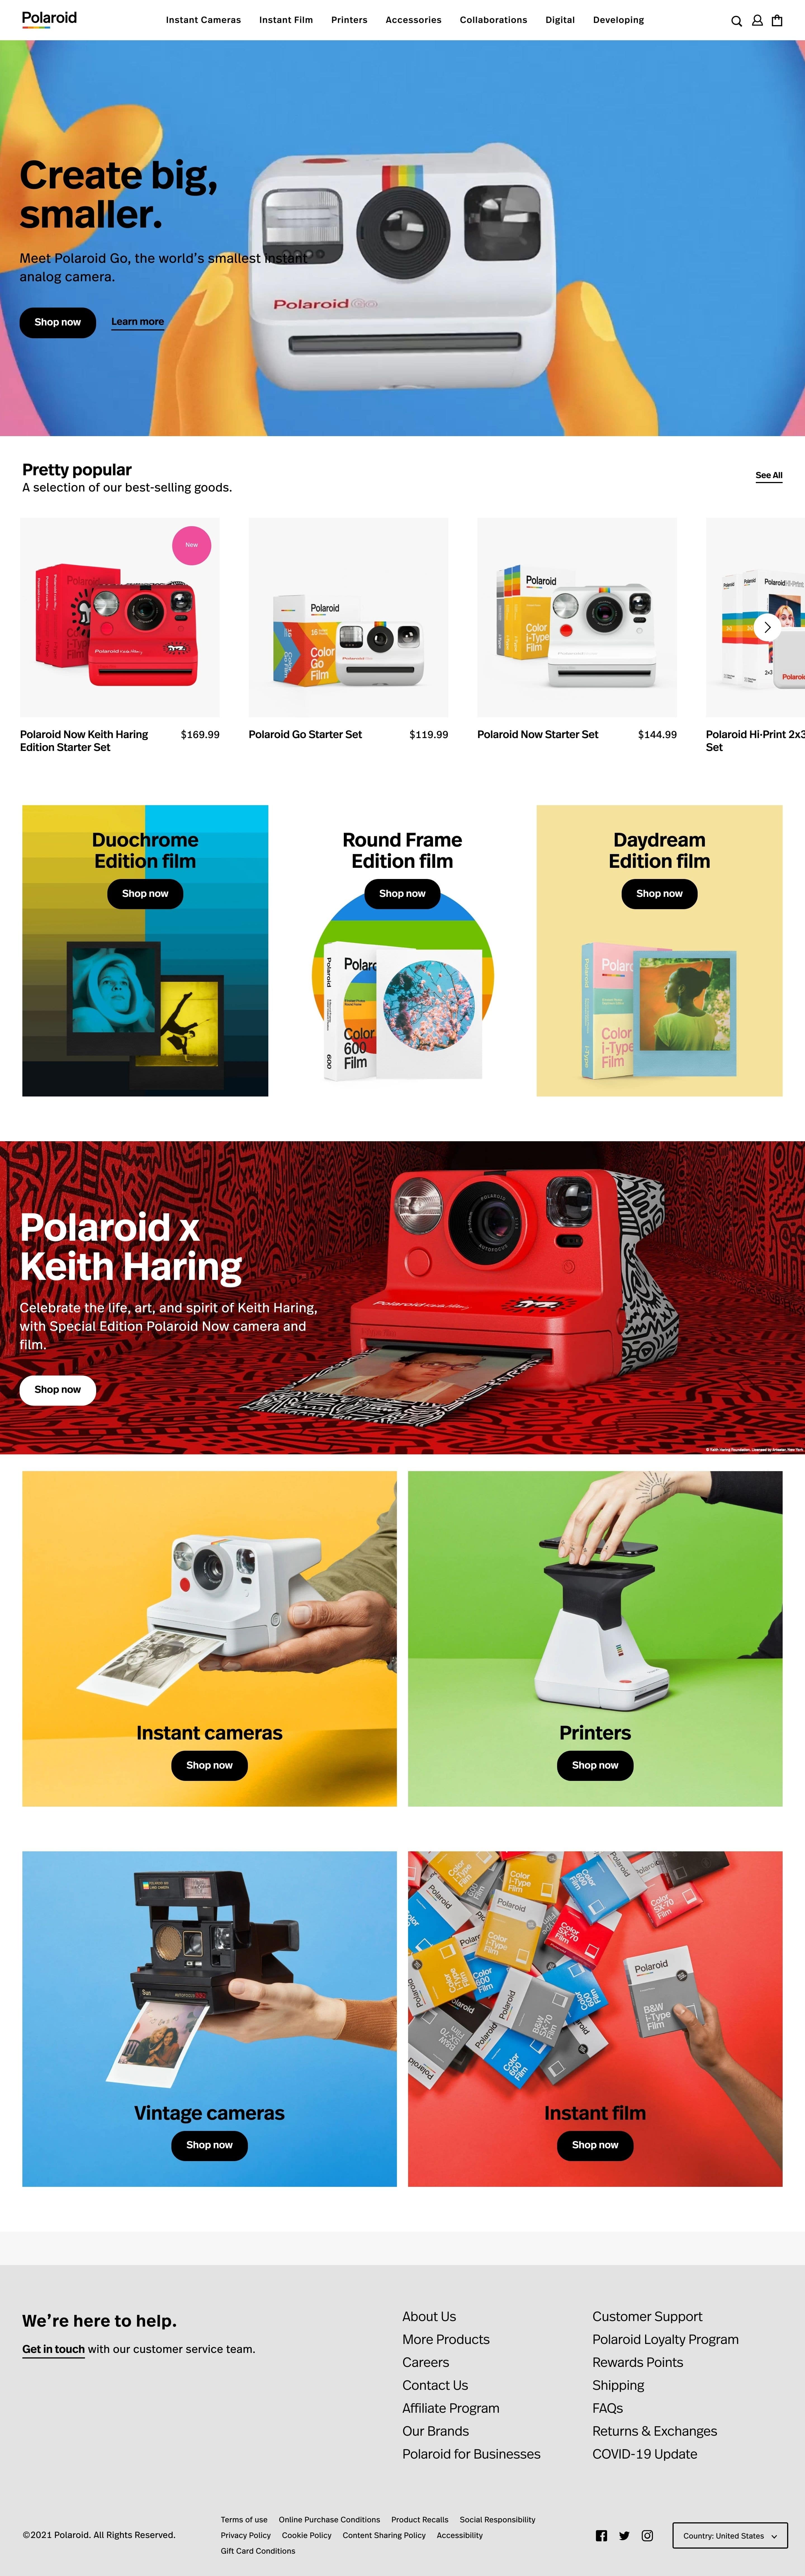 fe Lang Ansættelse Polaroid | DesignMunk